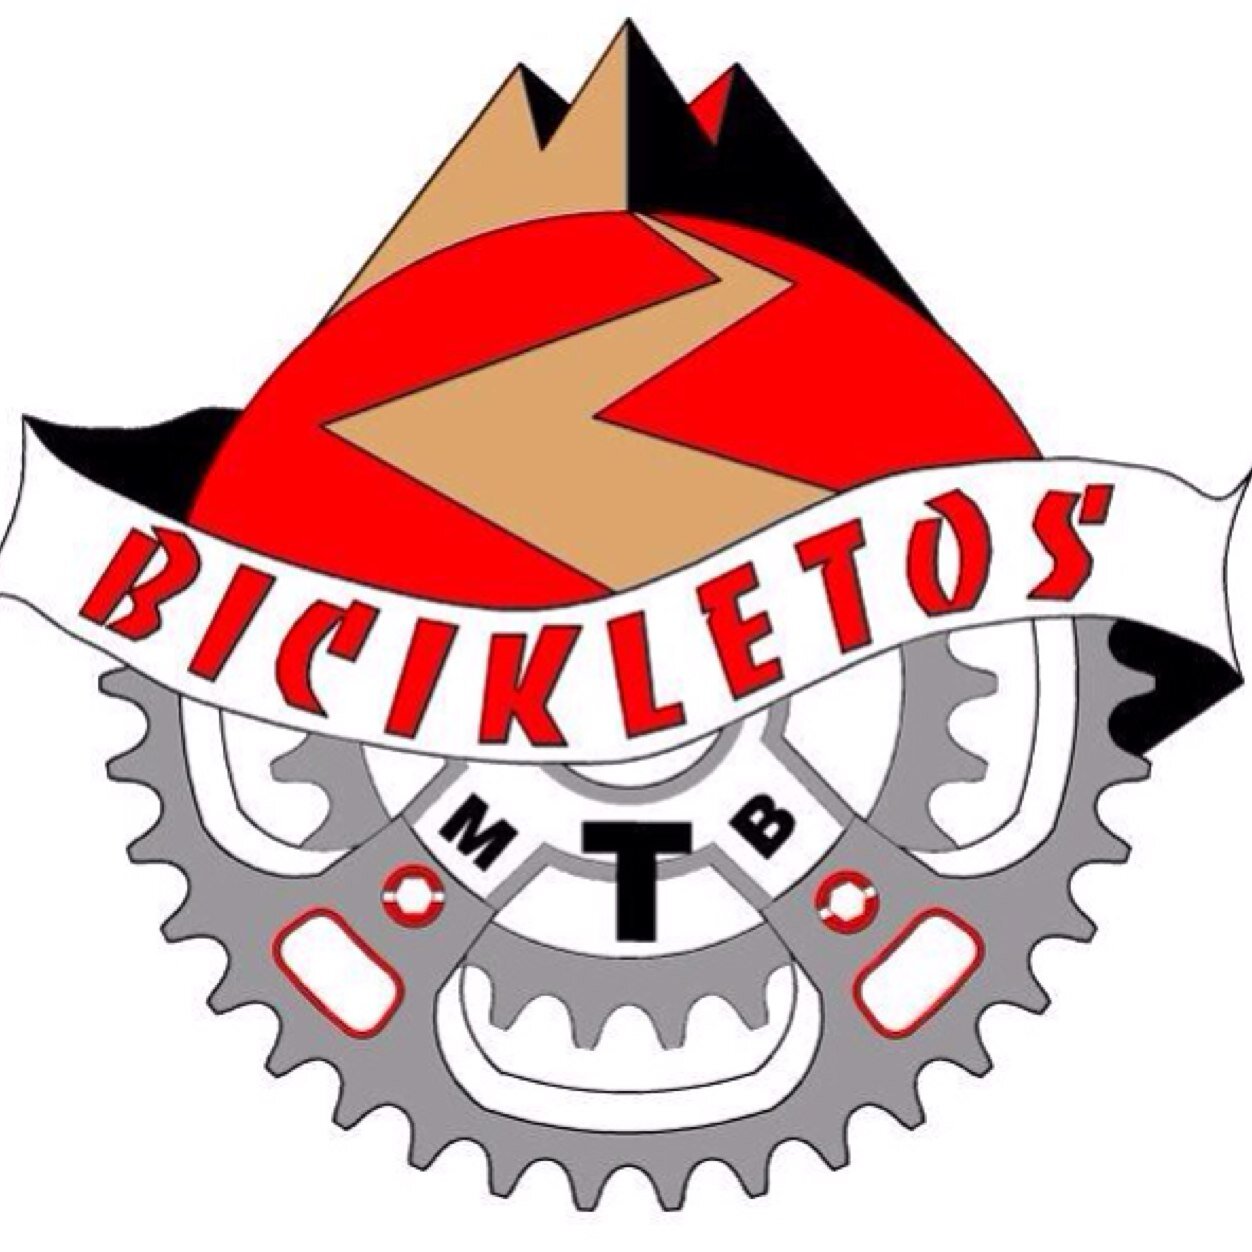 BICIKLETOS Profile Picture